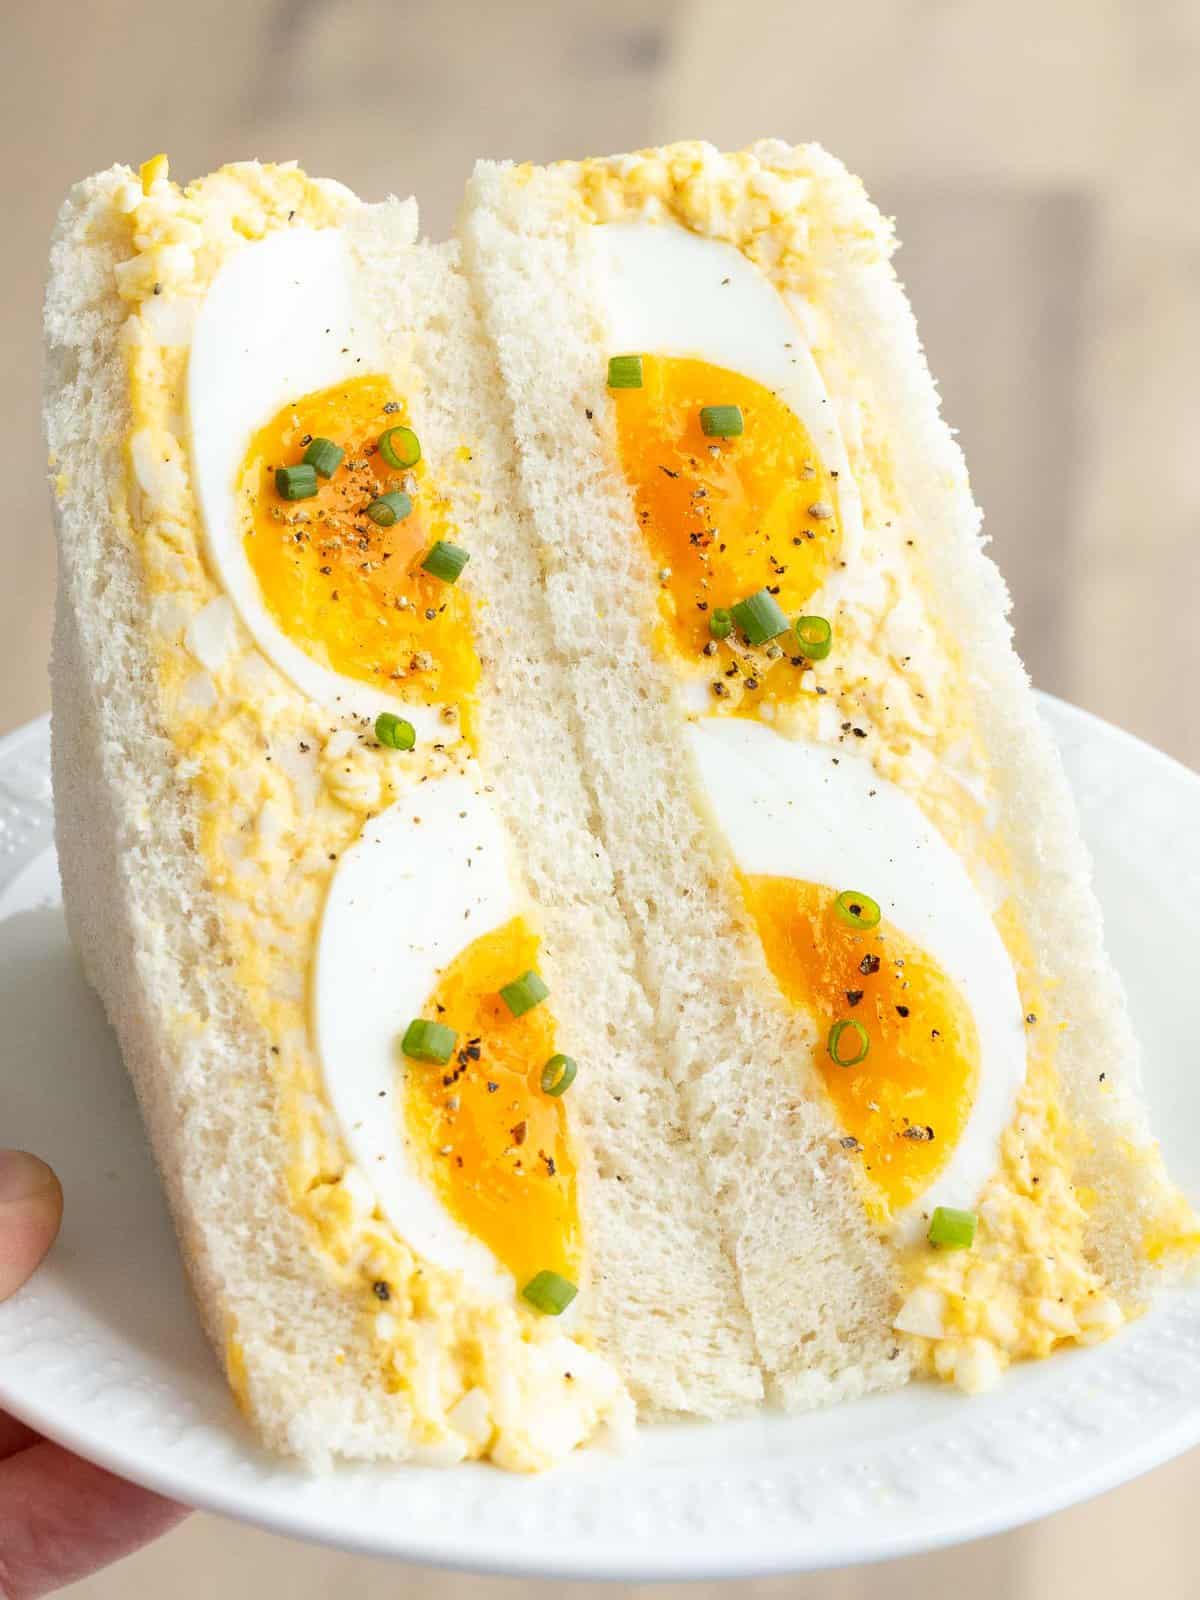 Japanese egg sandwich or tamago sando on a plate.